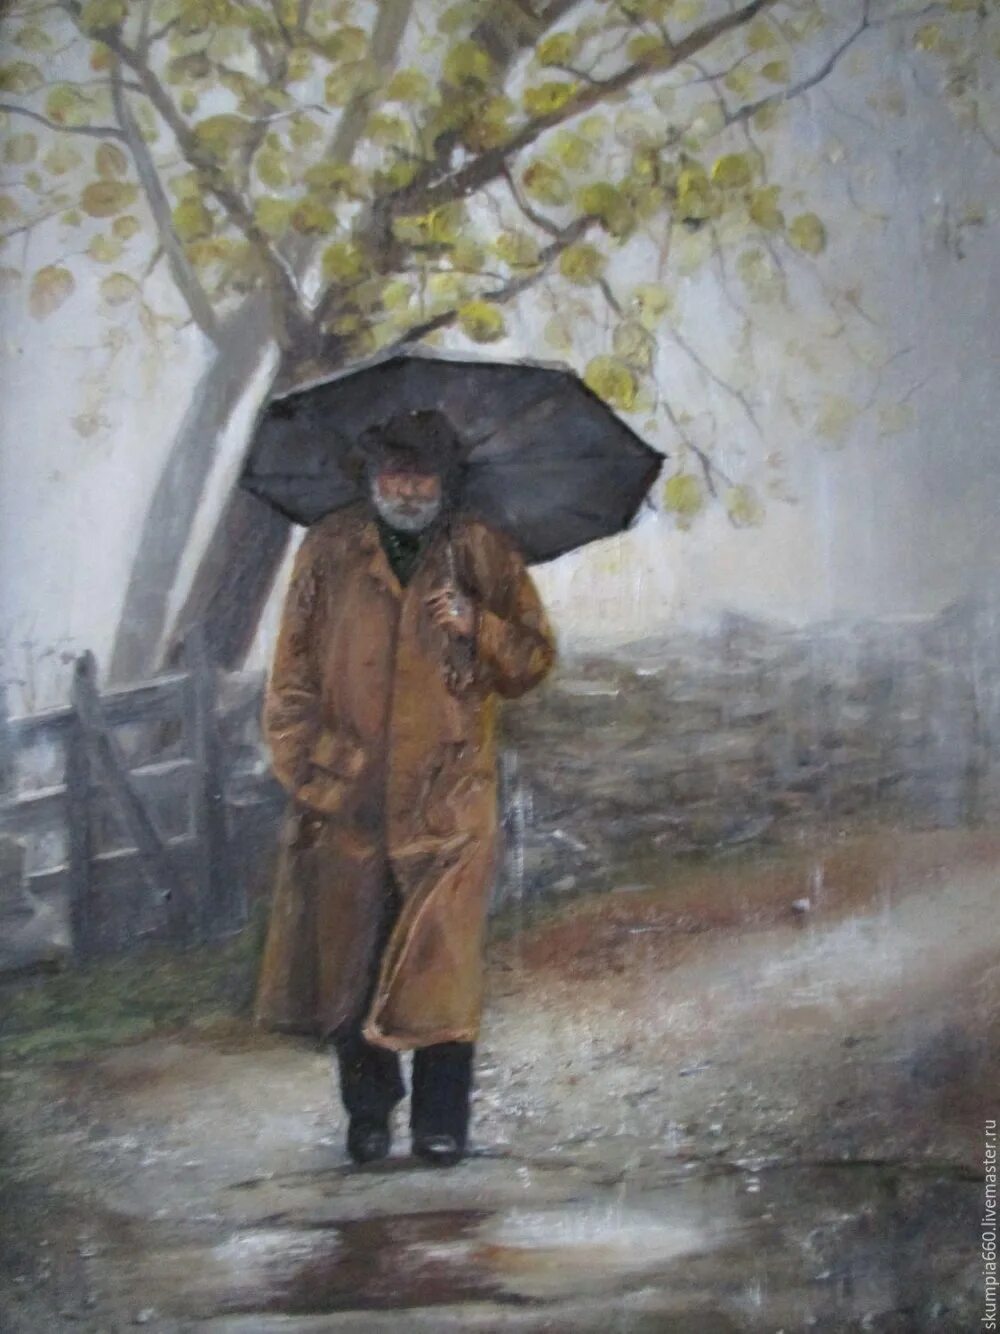 Калоши и зонтик. Человек под осенним дождем. Картина человек с зонтом. Мужчина с зонтом. Люди под дождем осень.